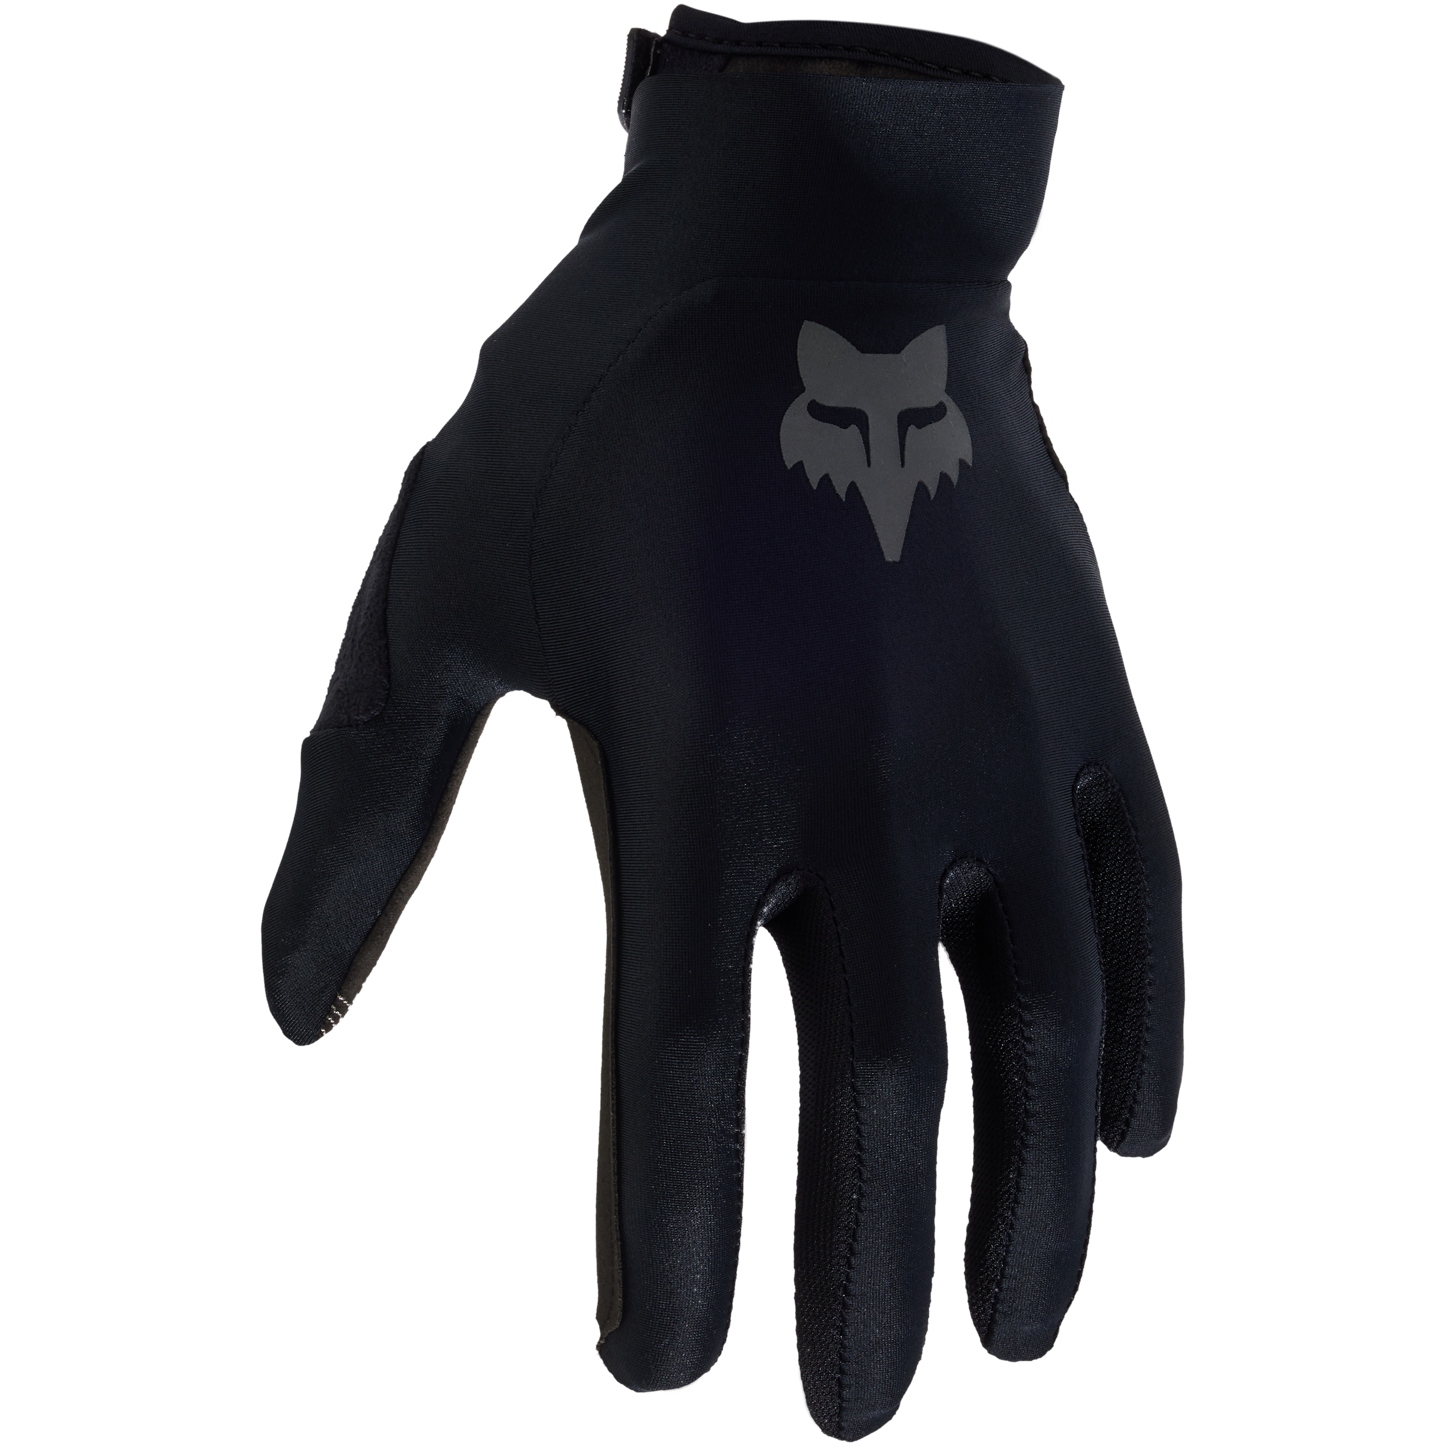 Productfoto van FOX Flexair MTB Fietshandschoenen Heren - zwart